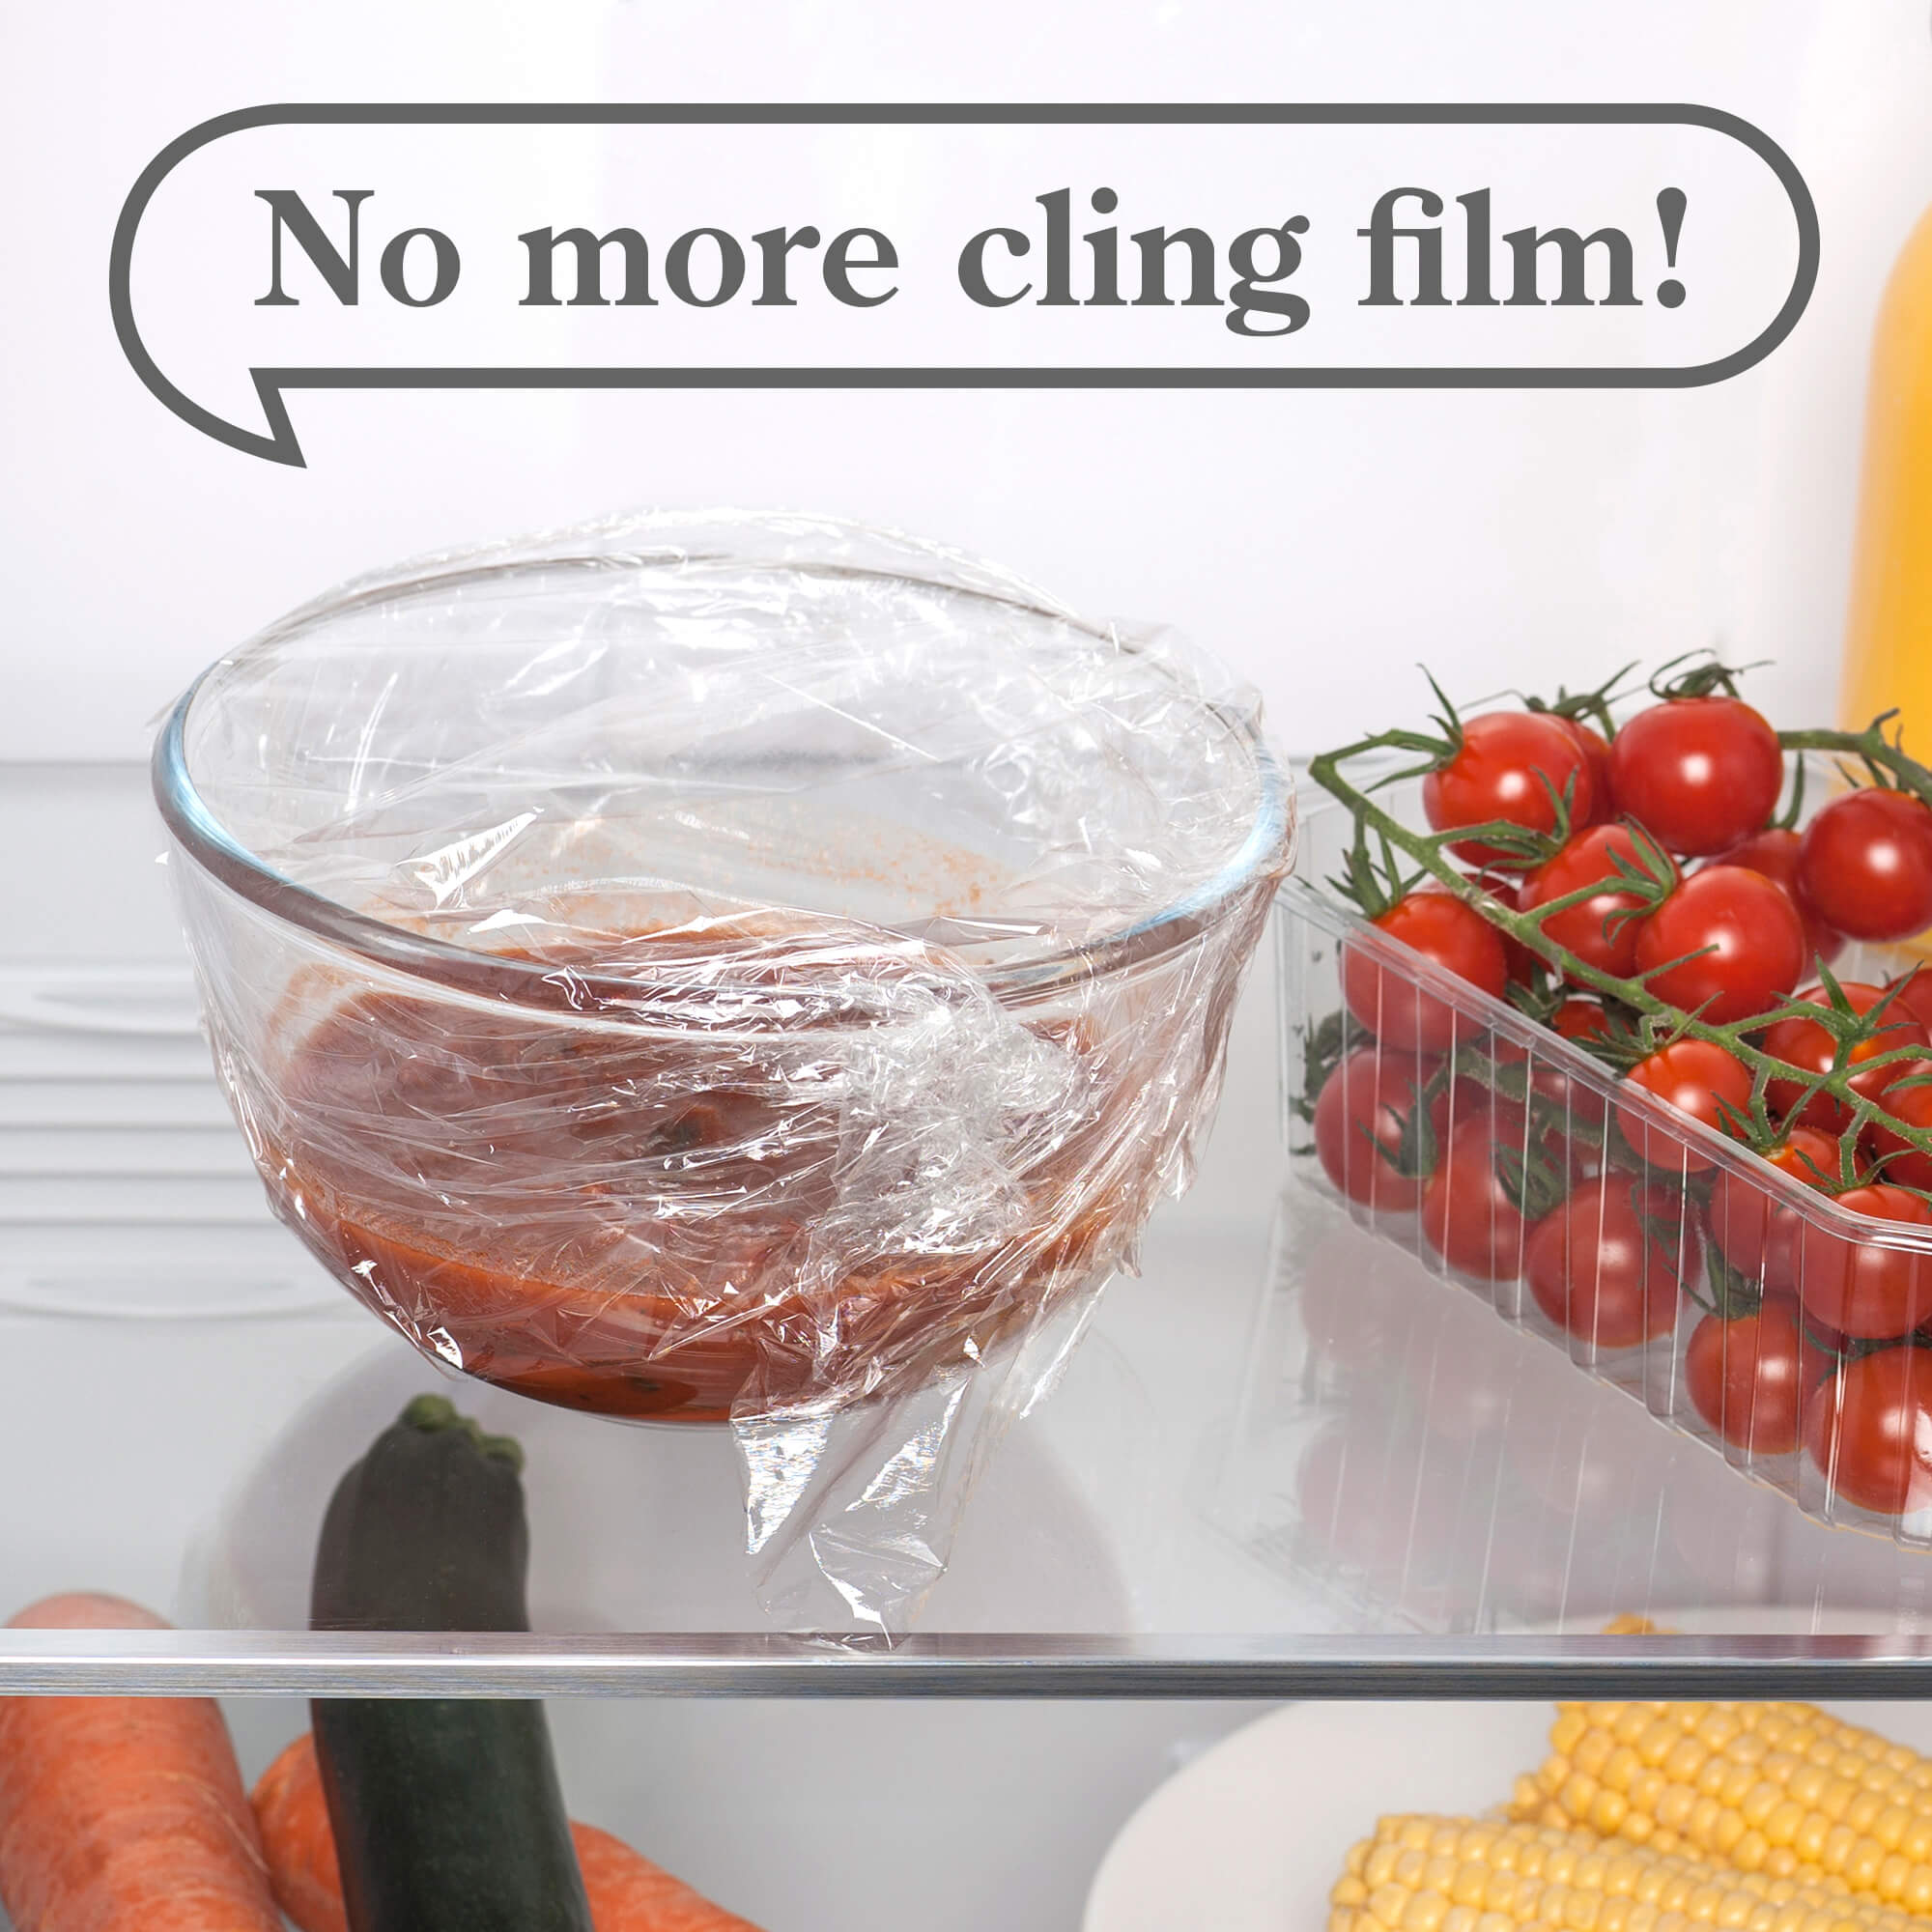 No more cling film